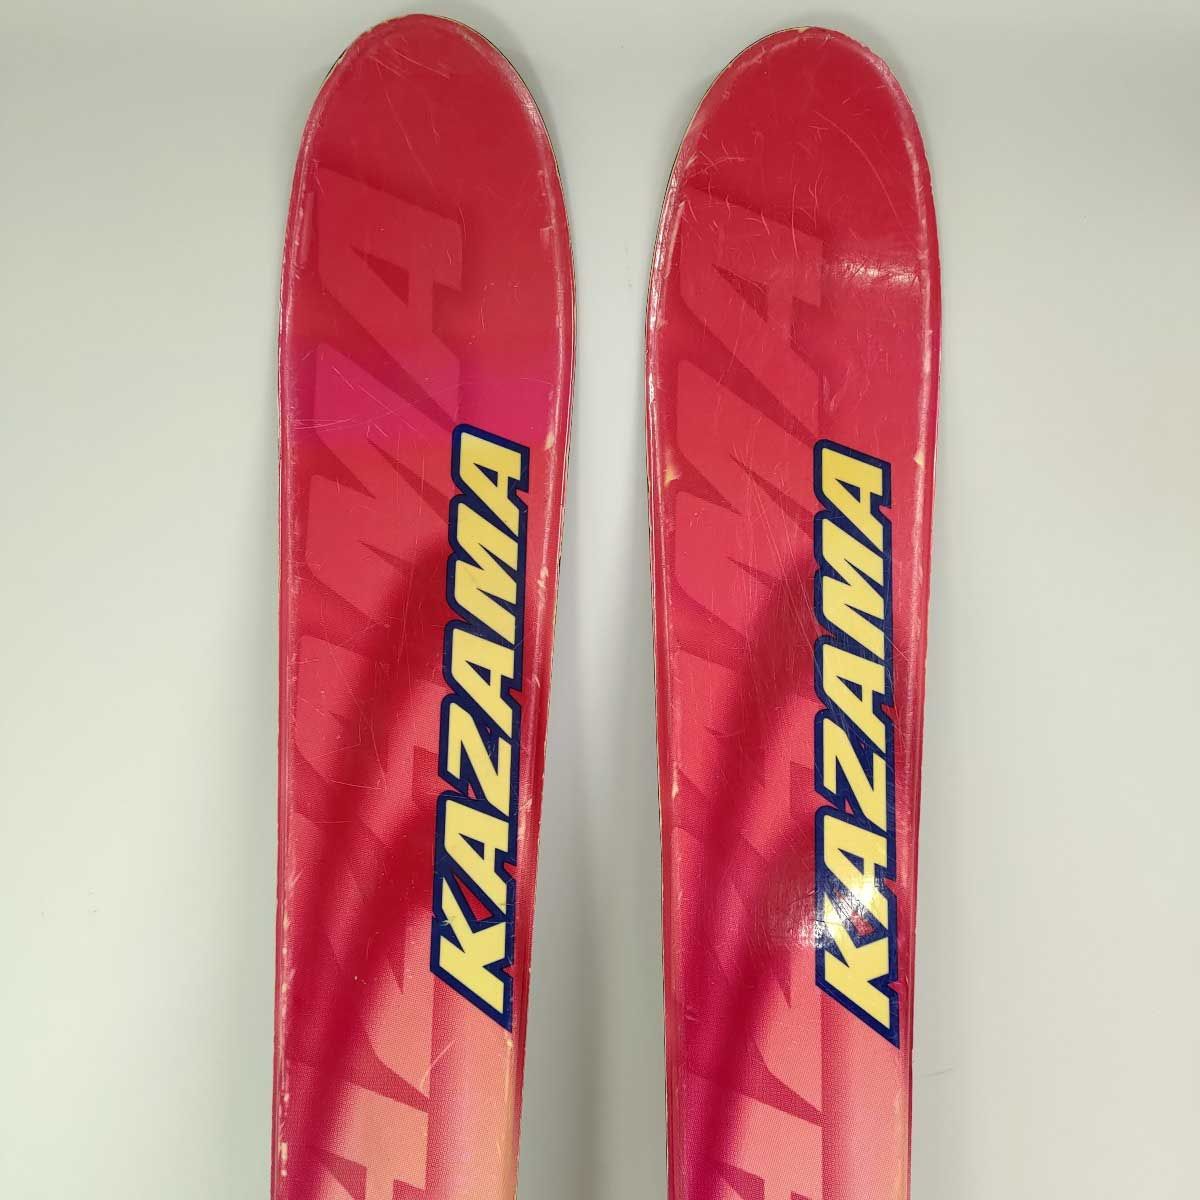 スキー スキー板 ストック KAZAMA SPAX 120cmKAZAMA